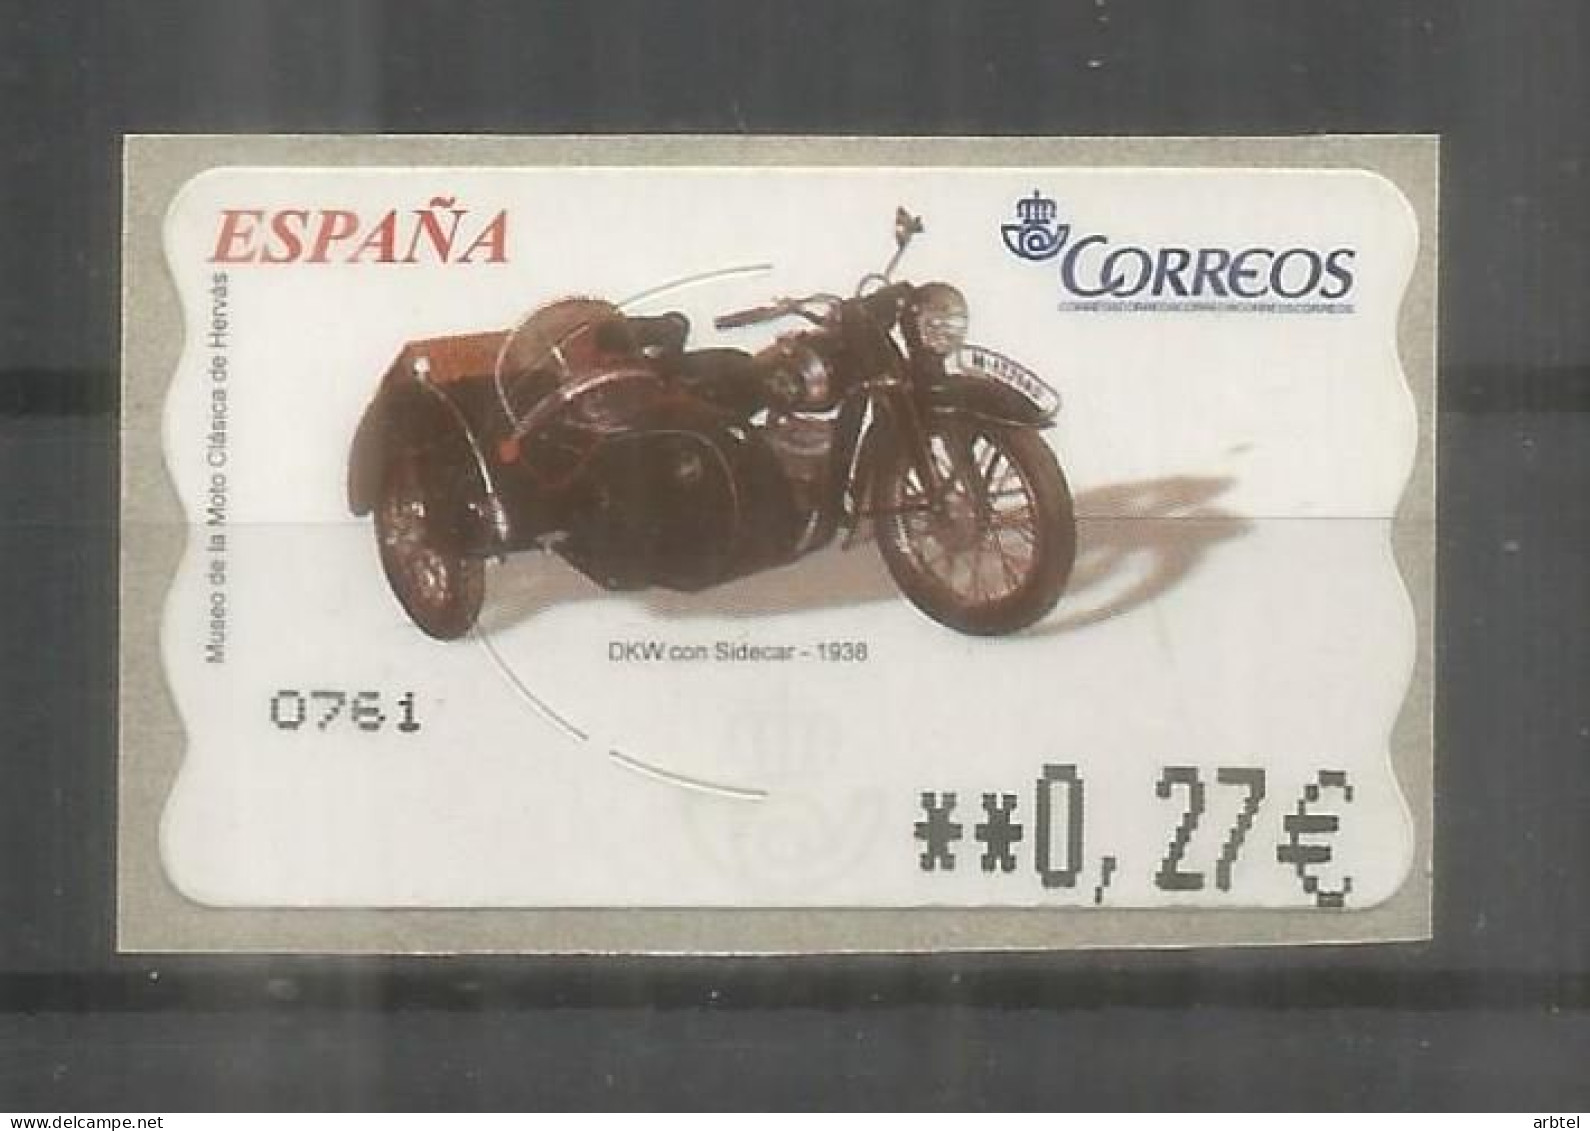 ESPAÑA ATM MOTOCICLETA DKW MOTORCYCLE - Motos